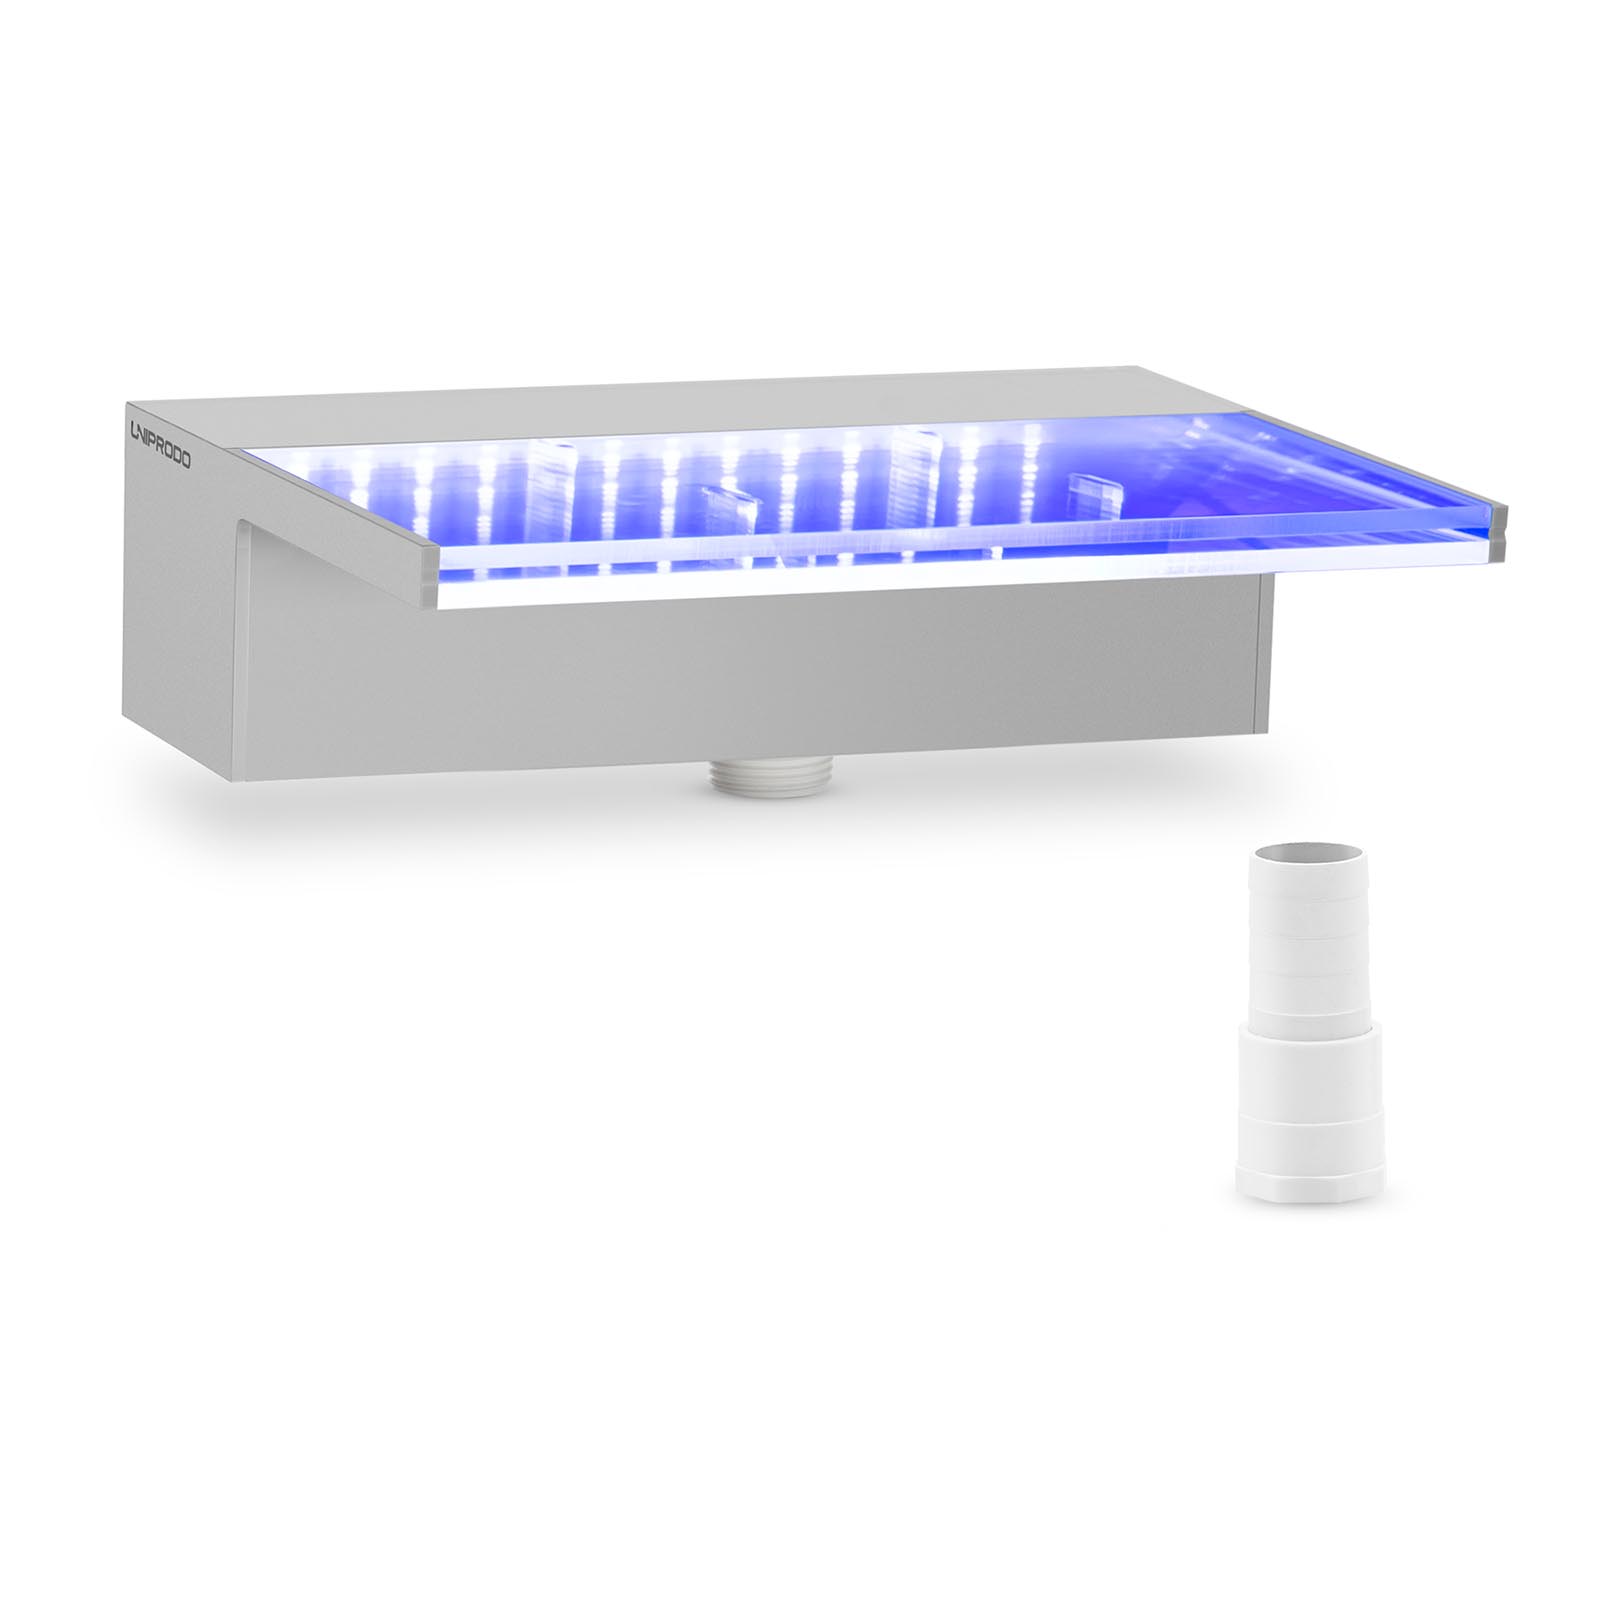  - 30 cm - LED osvetlenie - modrá / biela - hlboký chrlič